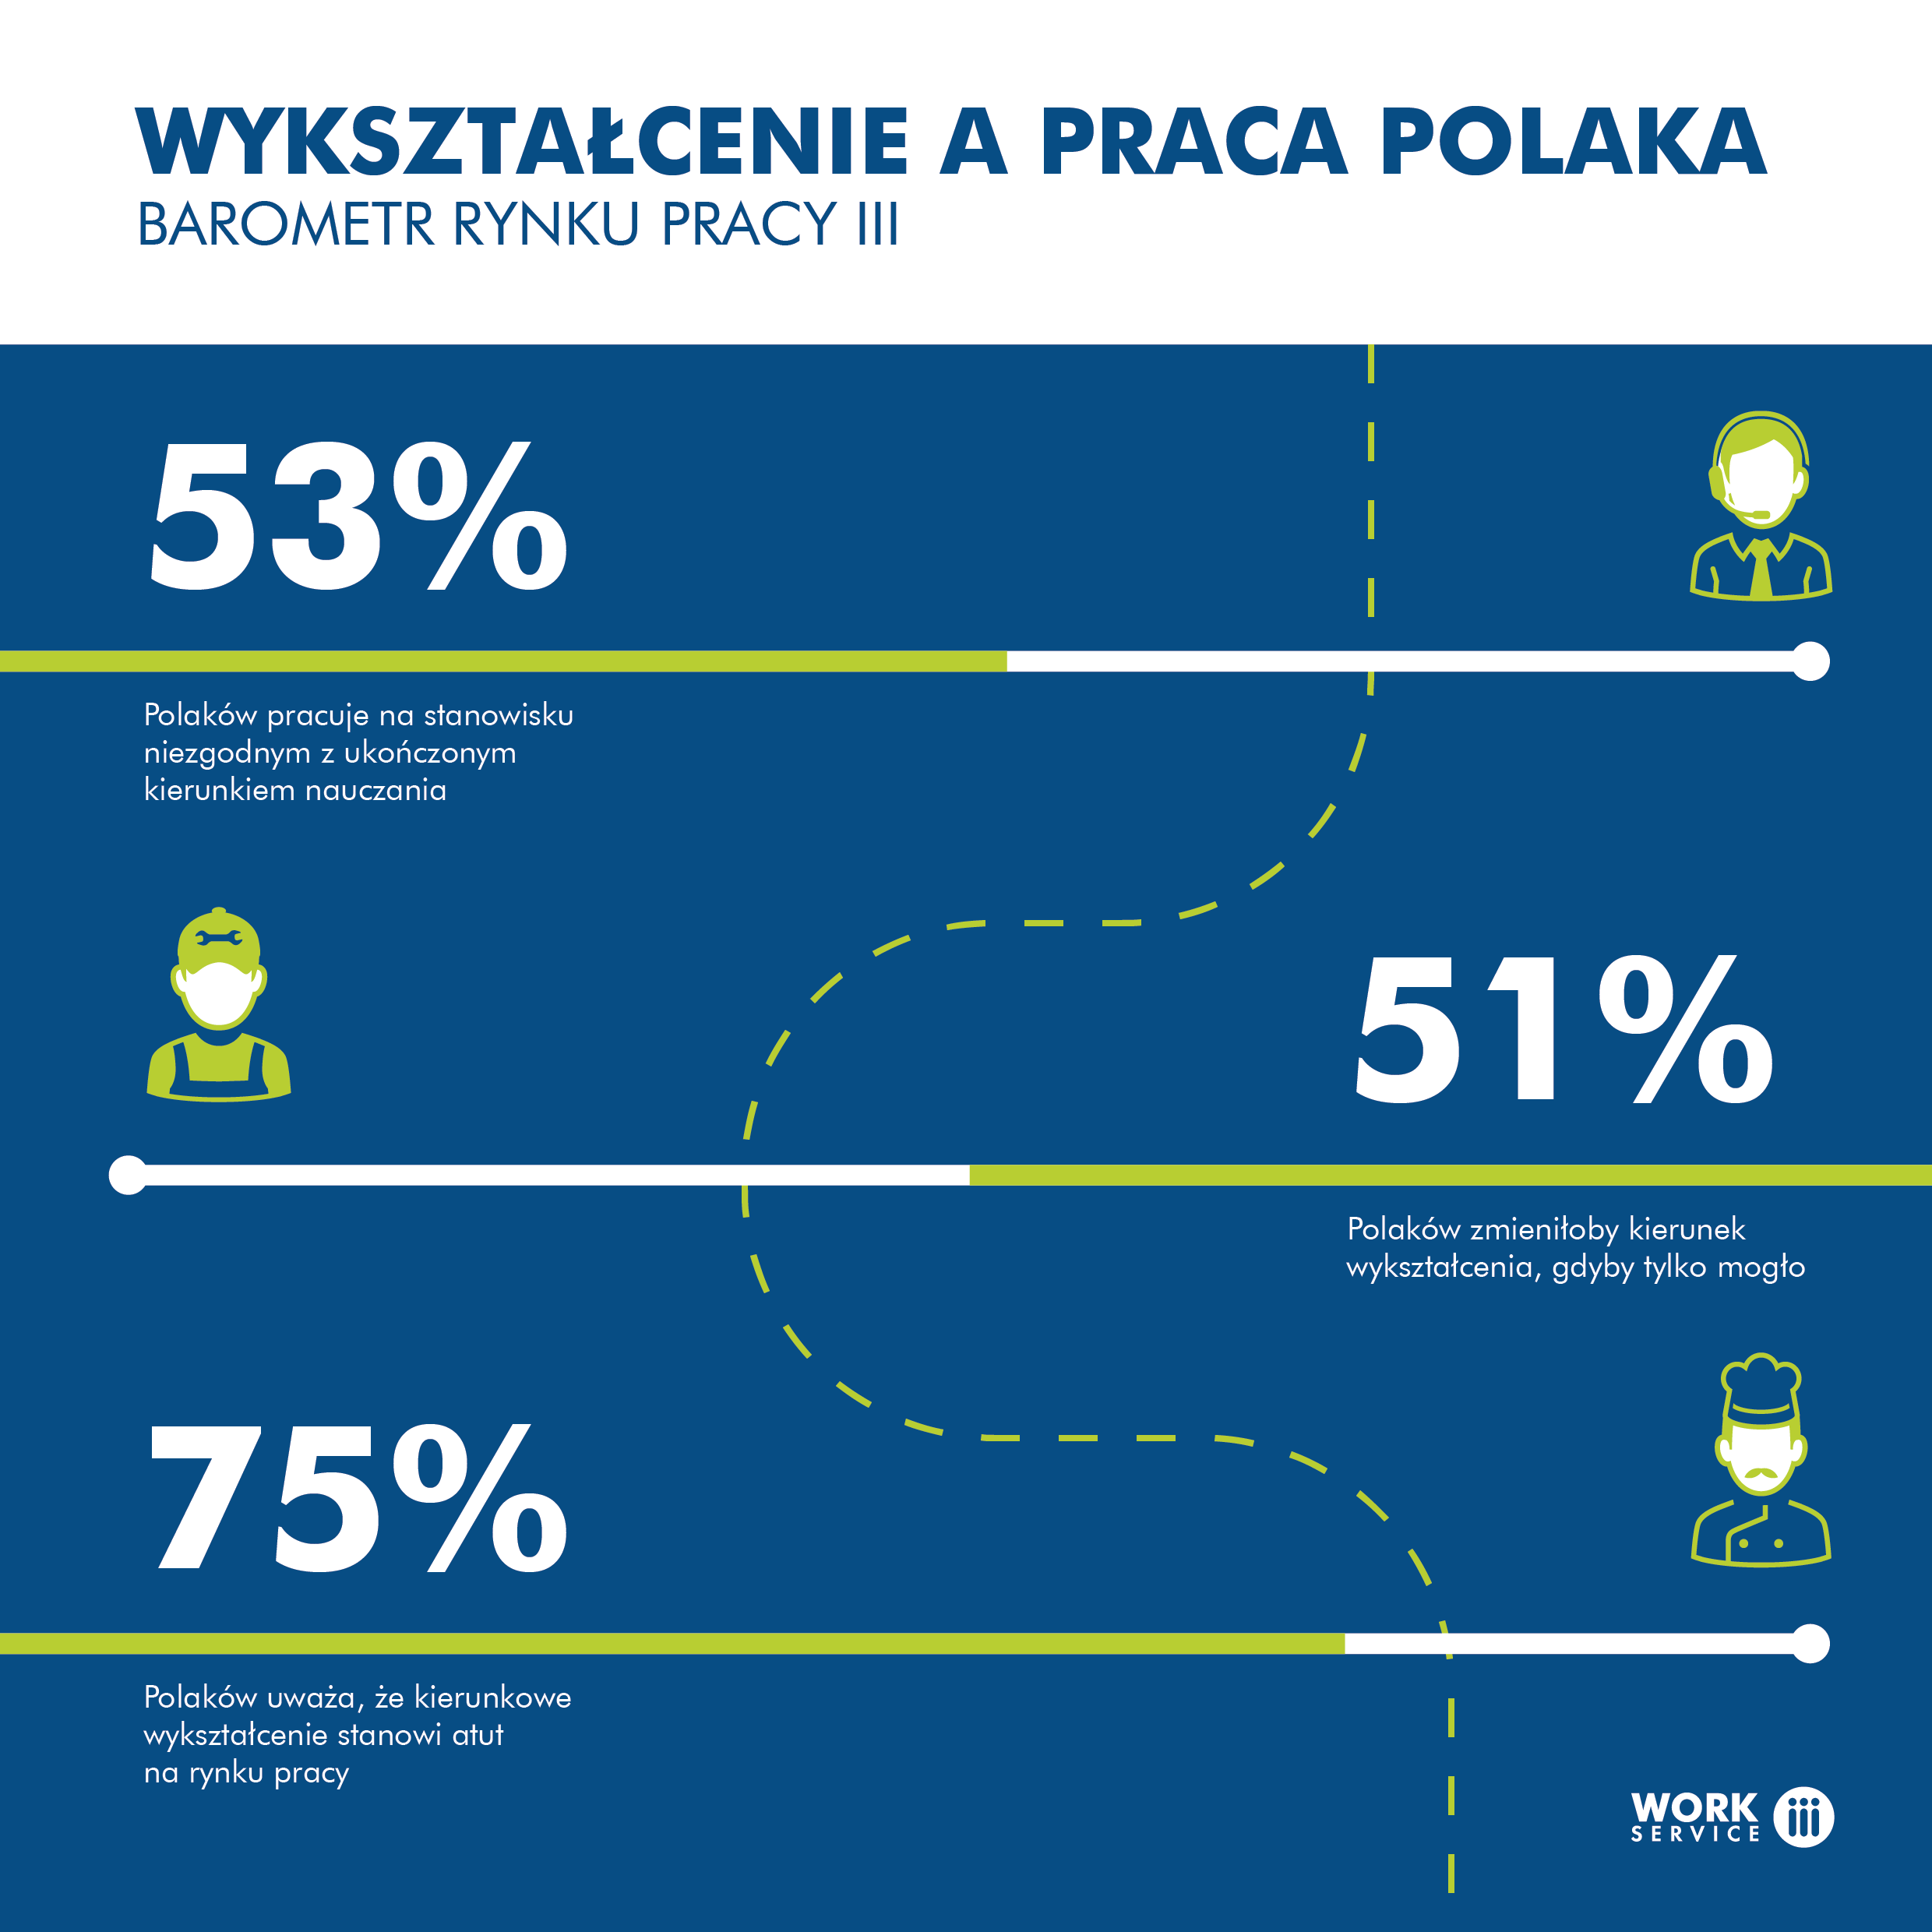 Maturzysto wybierz dobrze – ponad połowa Polaków zmieniłaby profil nauki, gdyby tylko mogła